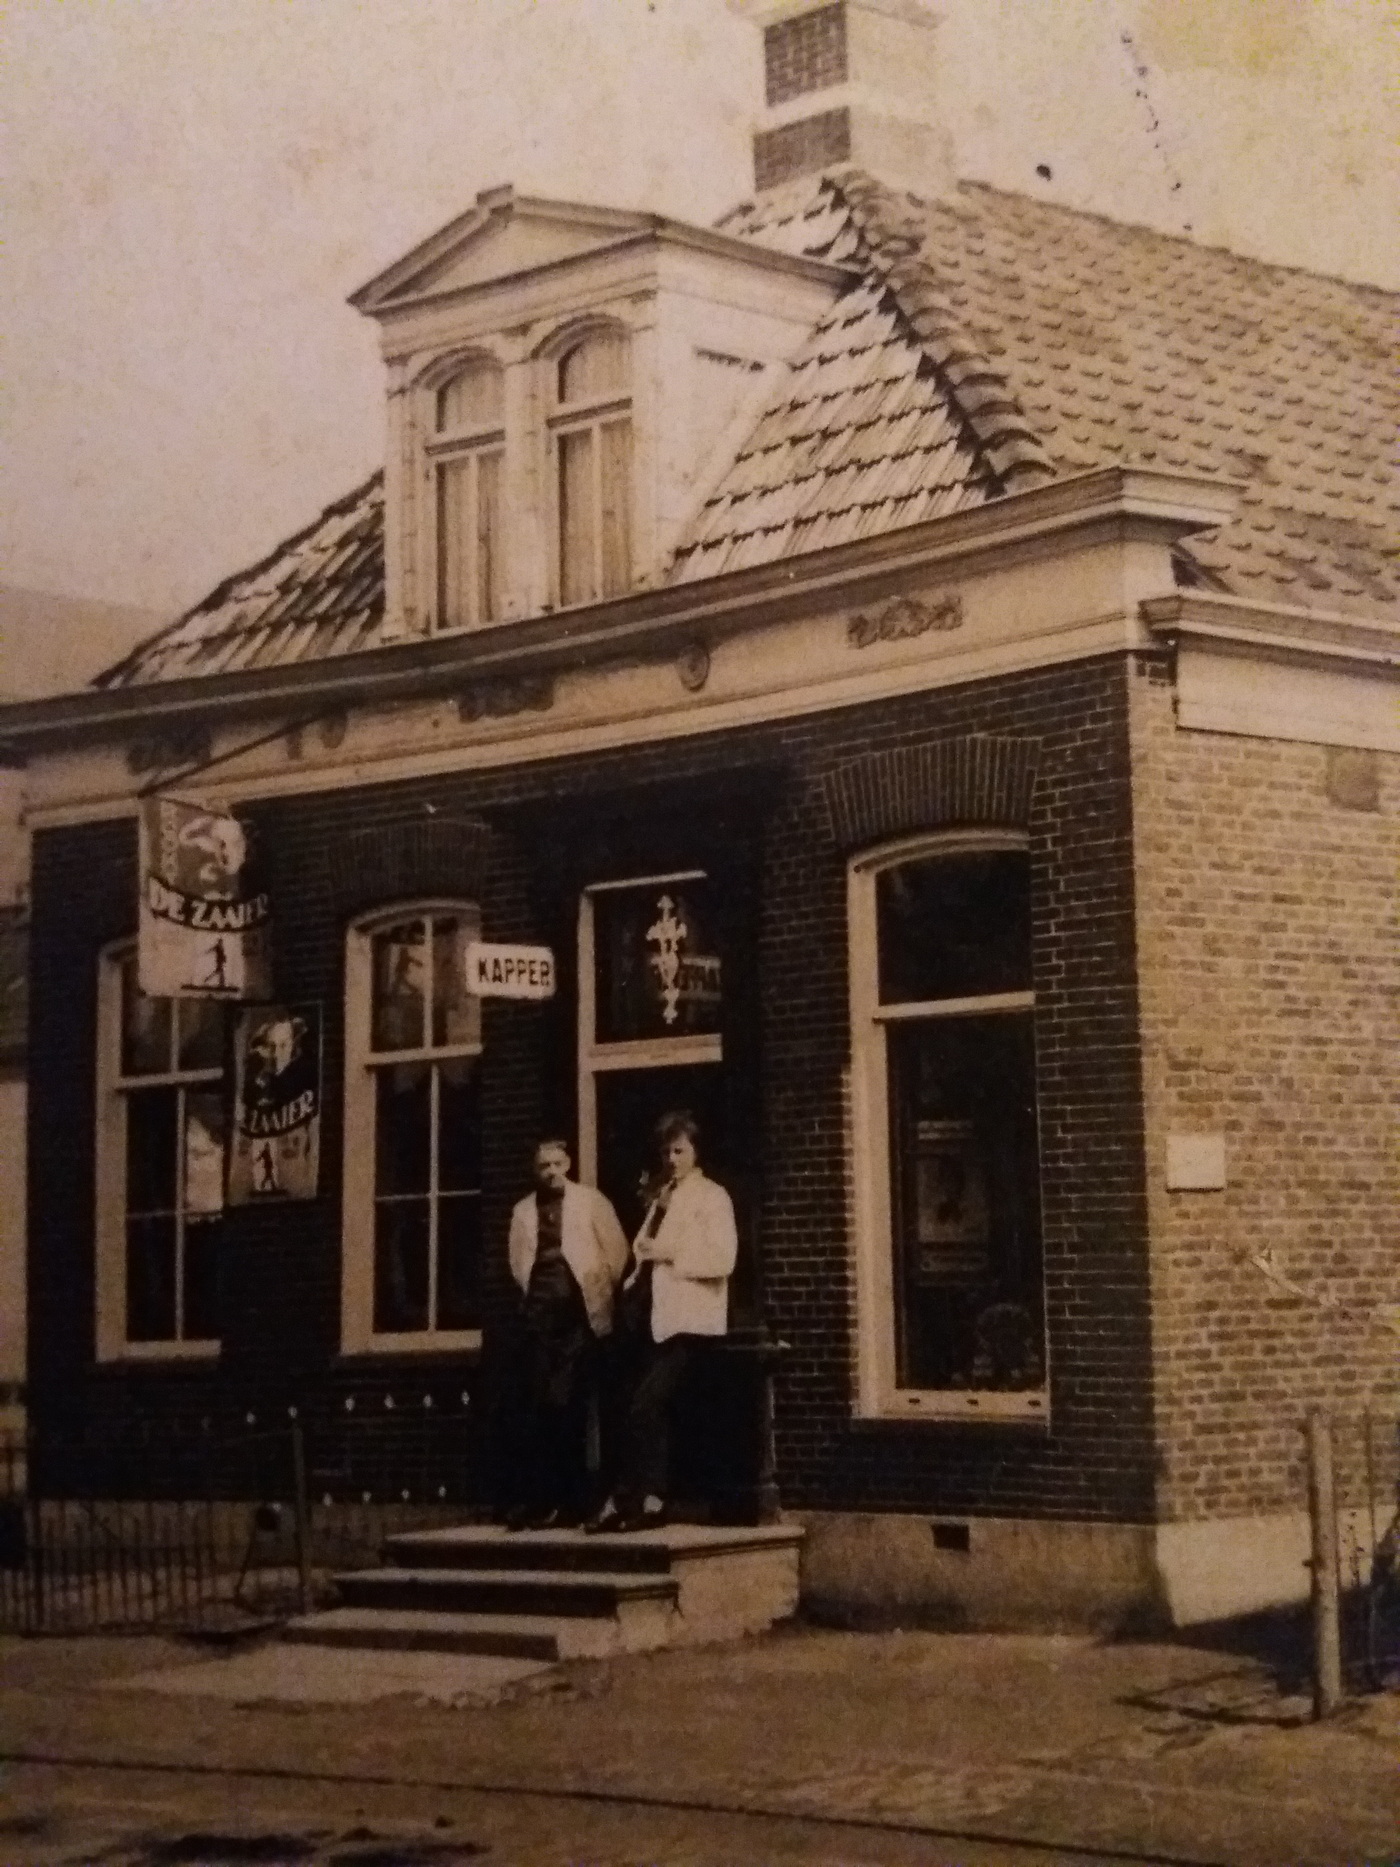 Op 17 mei 1934 opent hij, slechts 17 jaren jong, zijn eerste kapsalon aan de Hoofdstraat in Oostwold. Foto: ingezonden door ©Tineke Hekman.